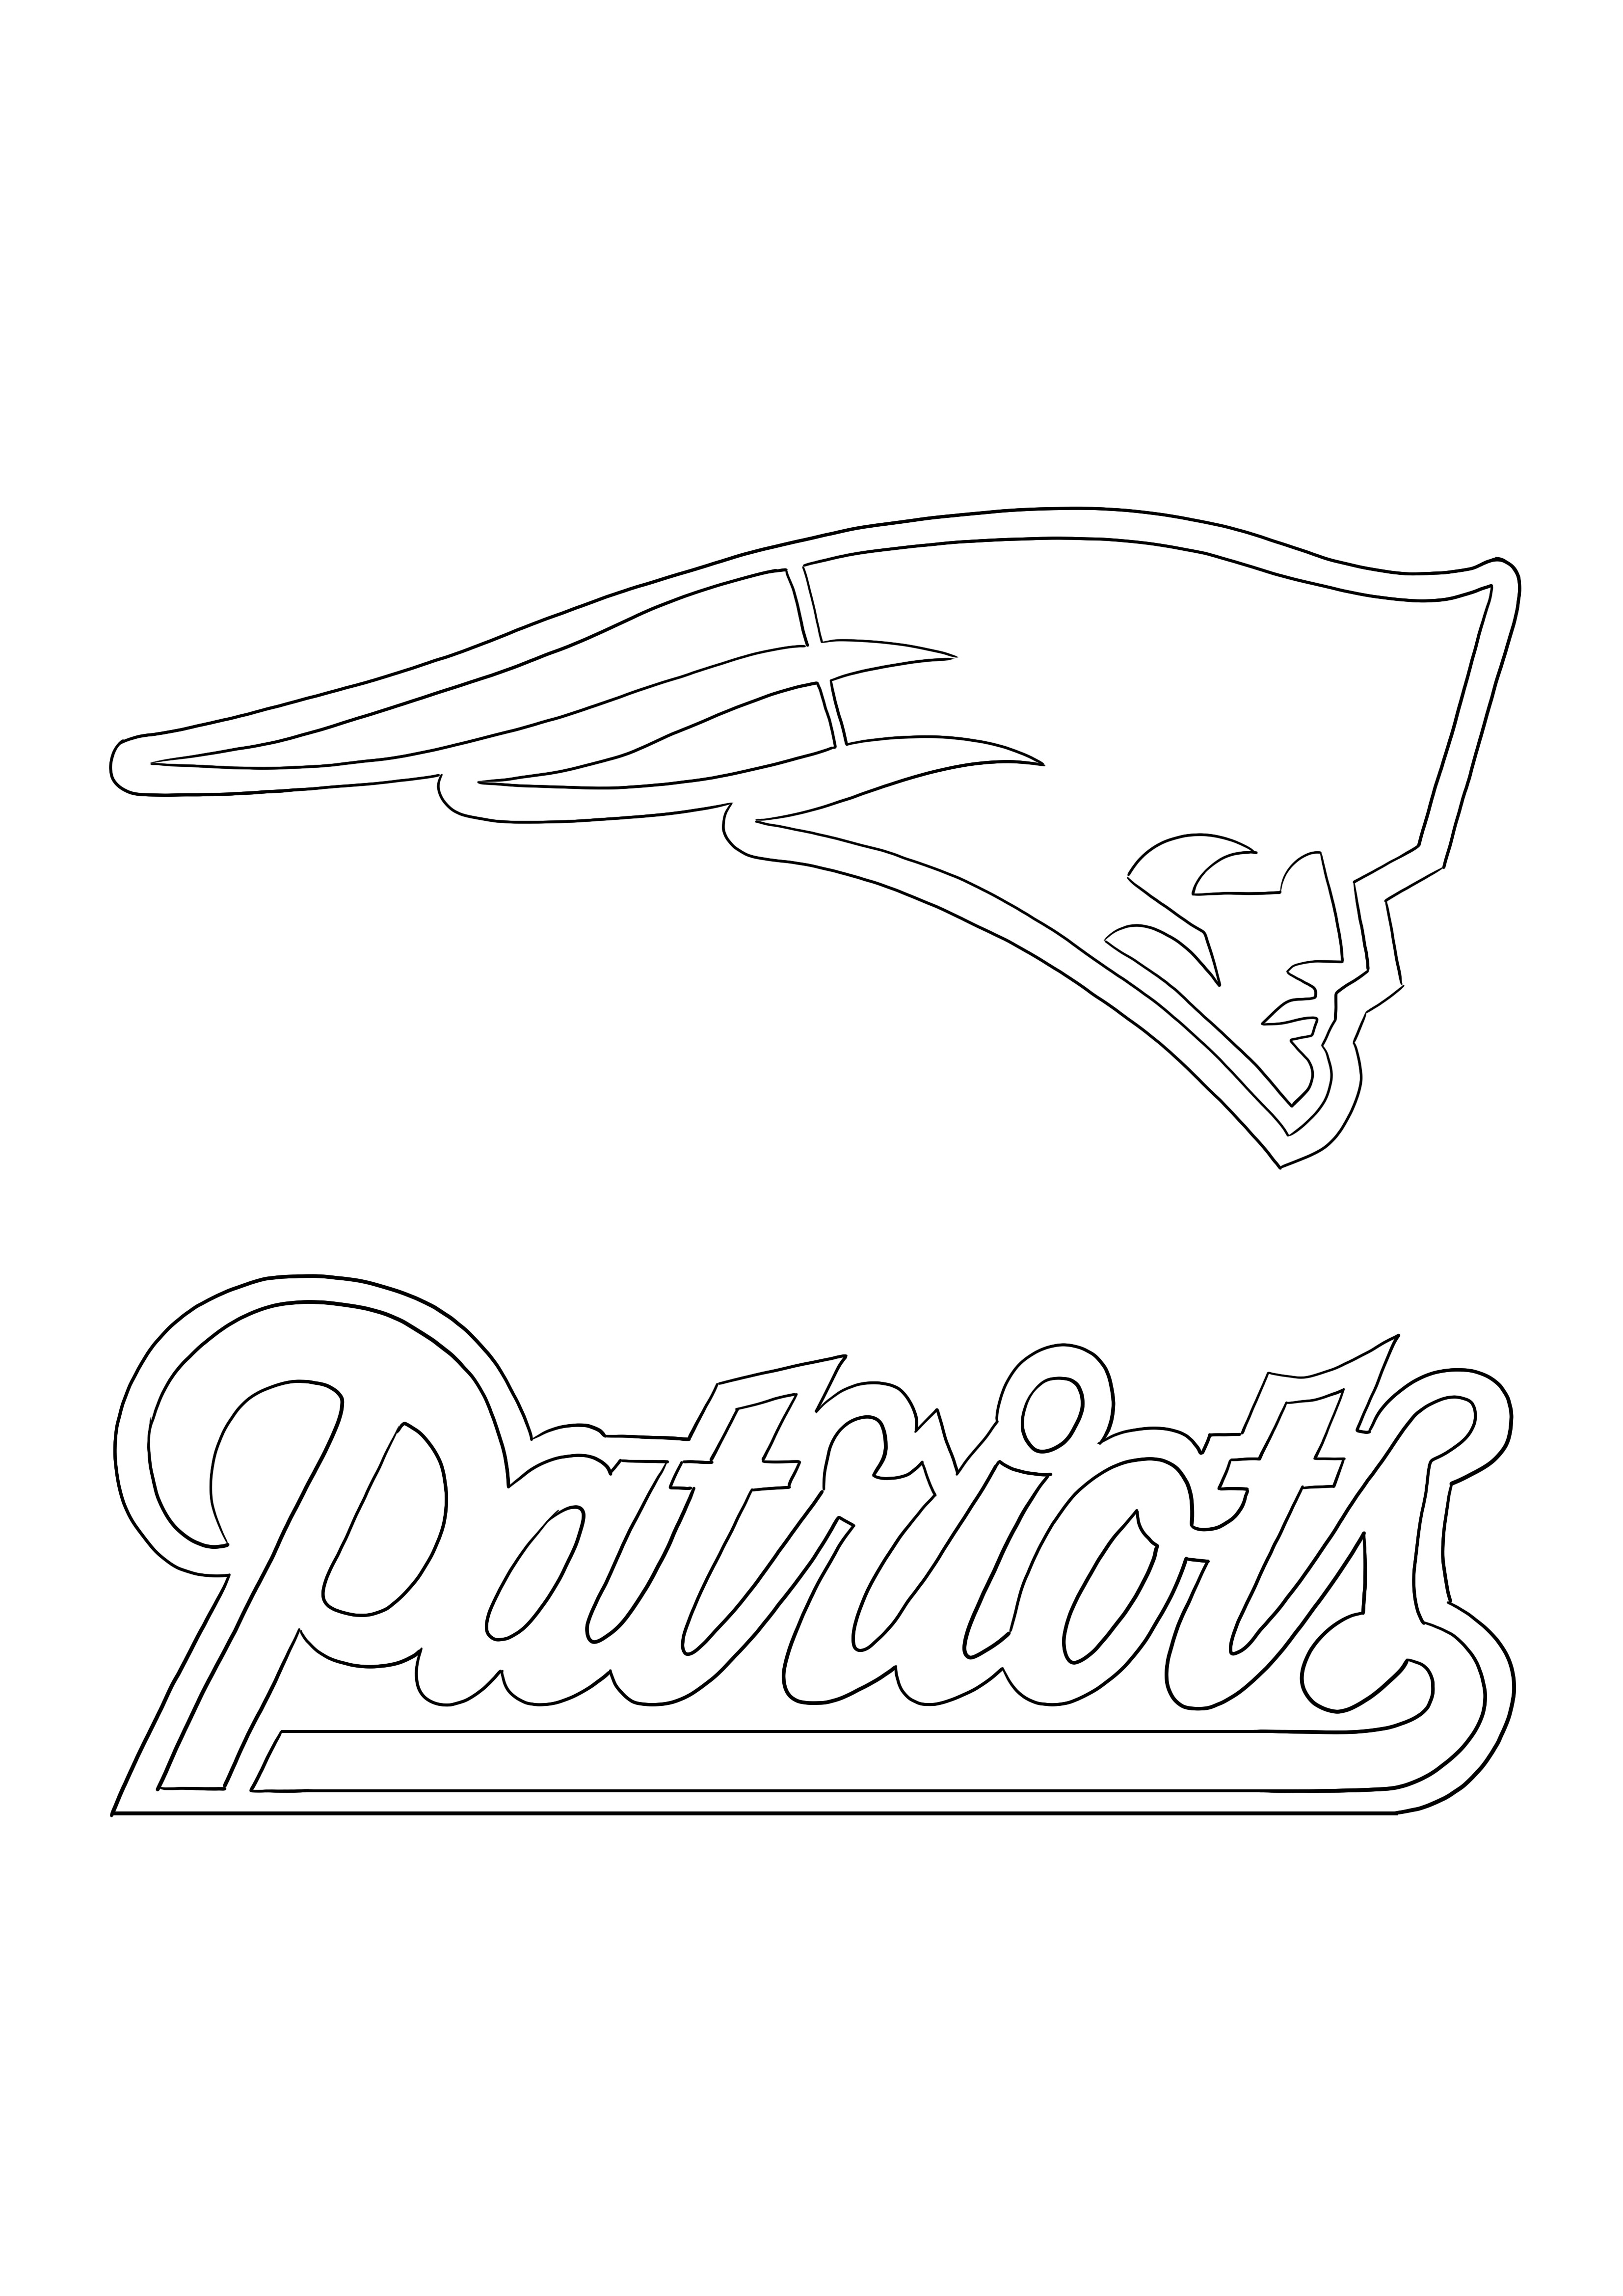 Coloração do logotipo Patriots e download gratuito